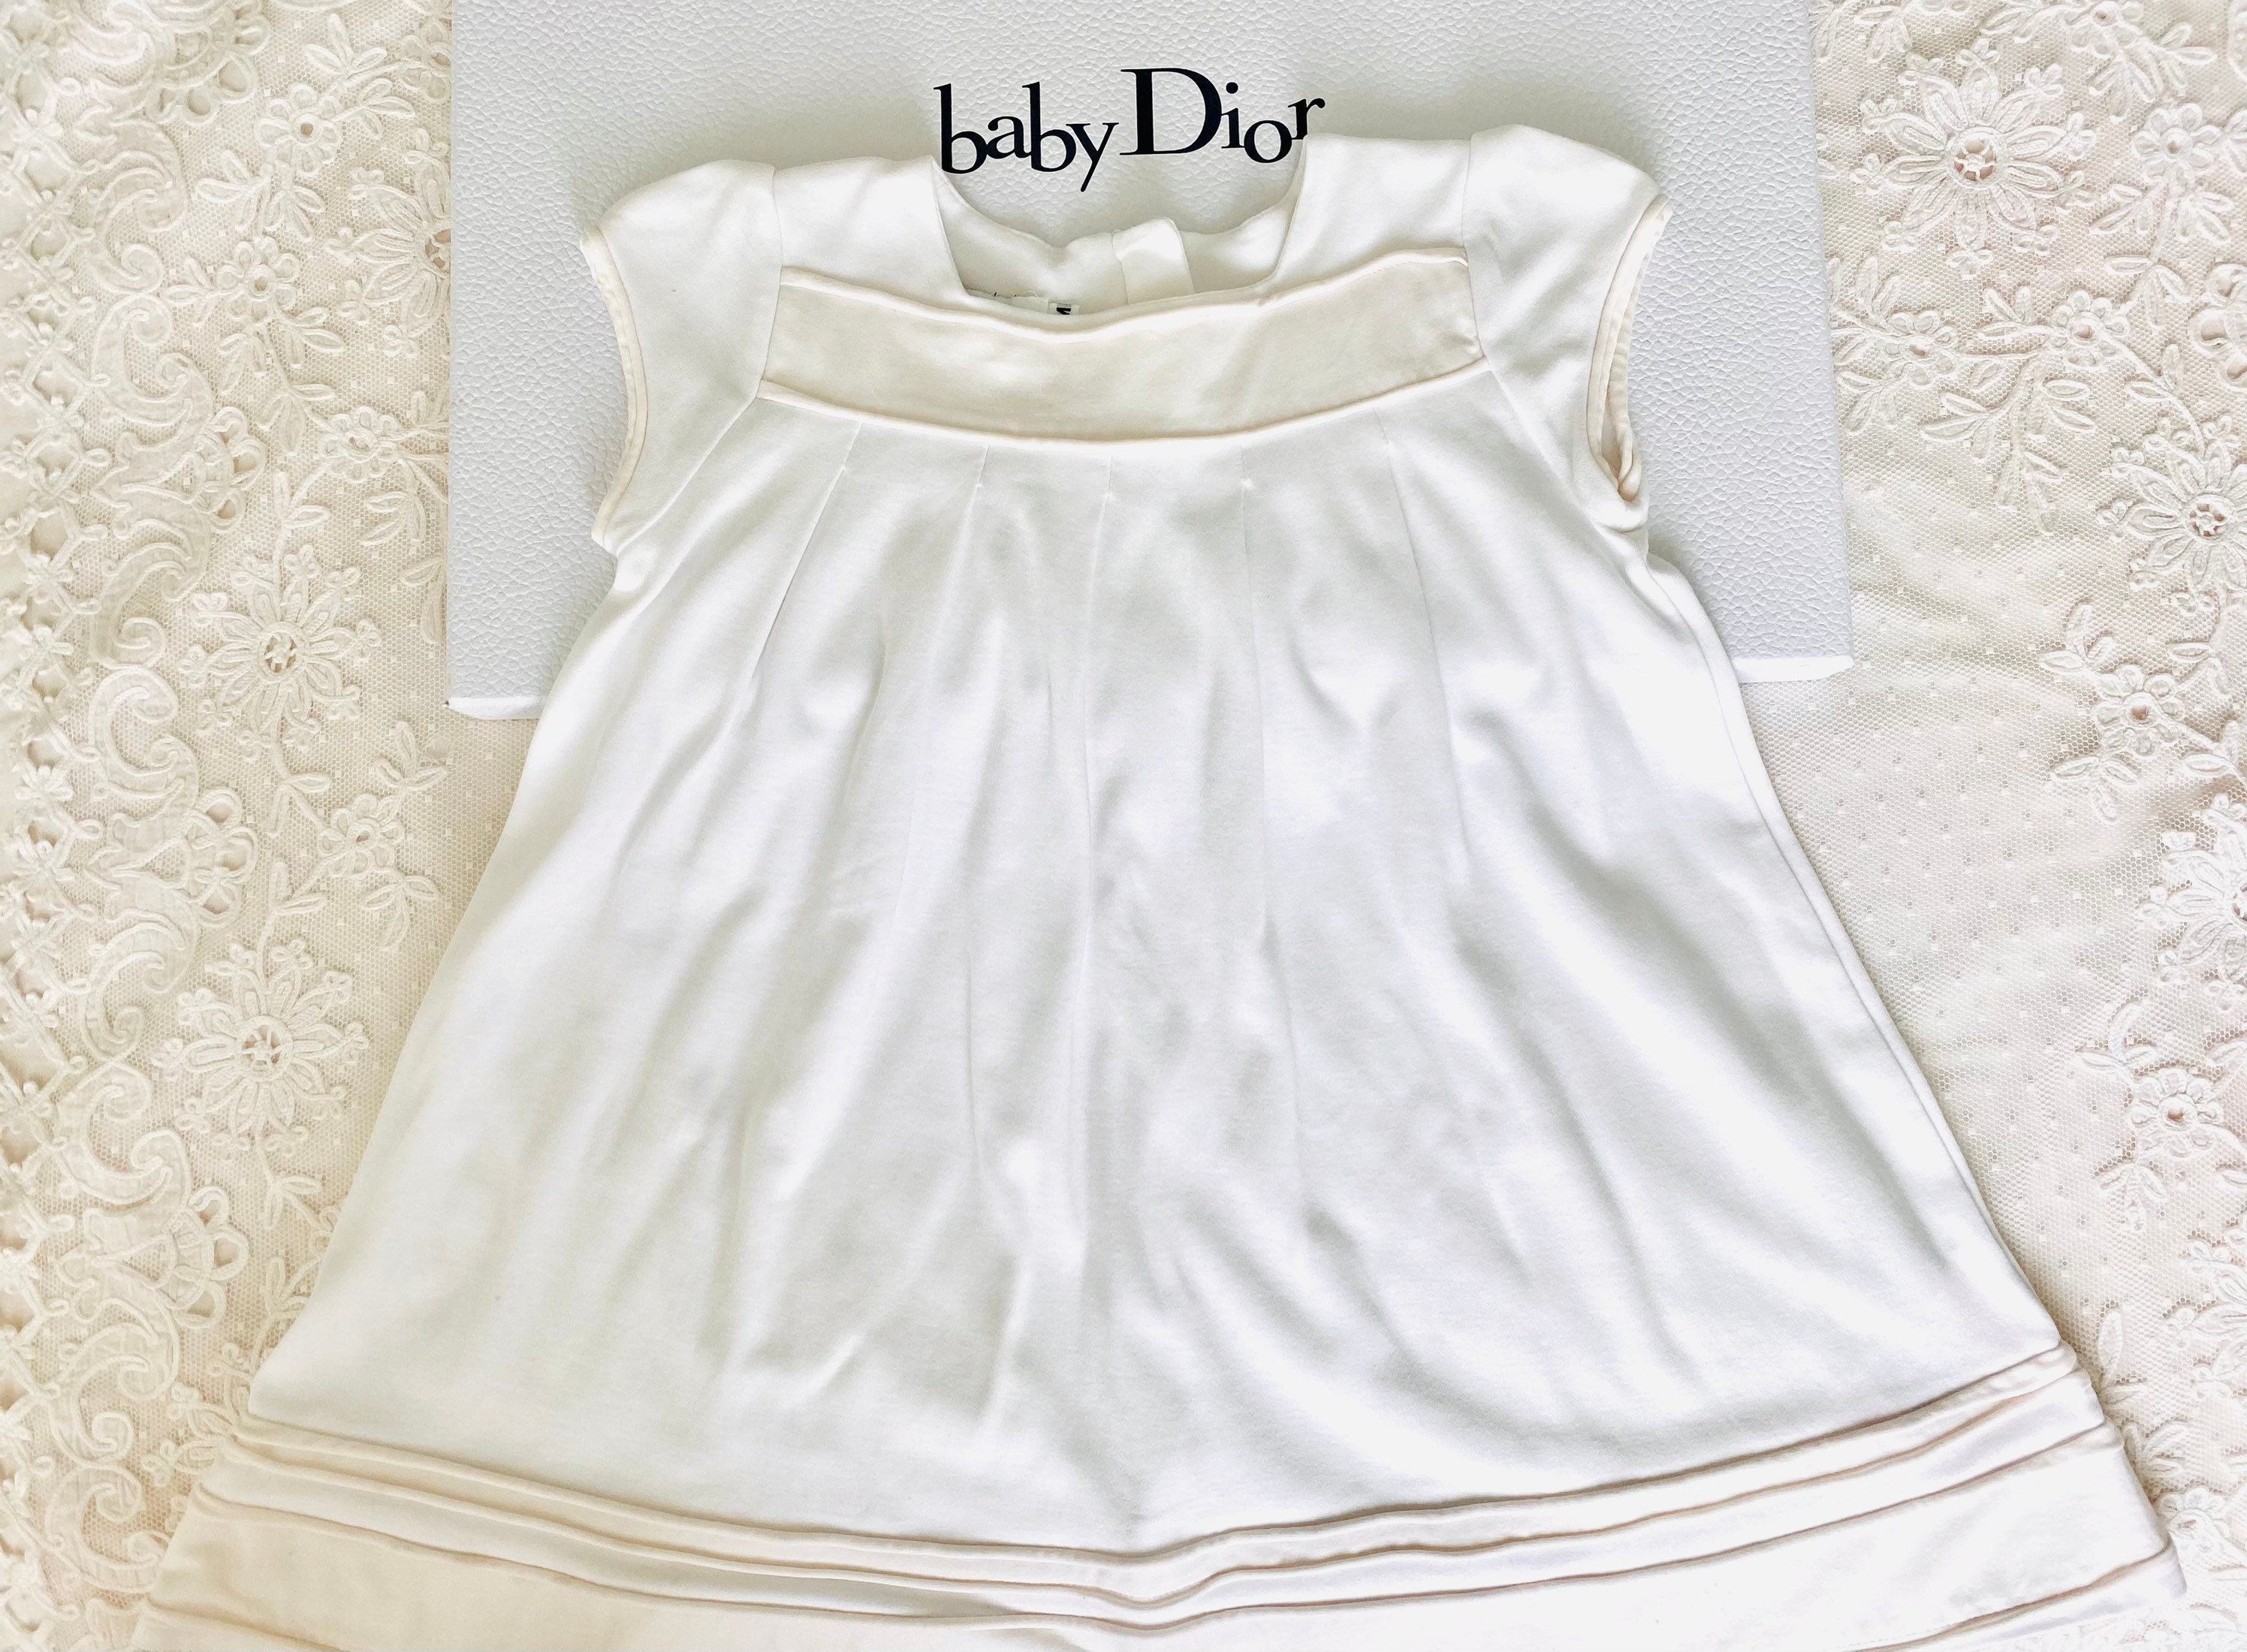 Baby DIOR Mädchenkleid Gr 98 NEU Dior girls dress 3 years NP 76000 EUR   eBay